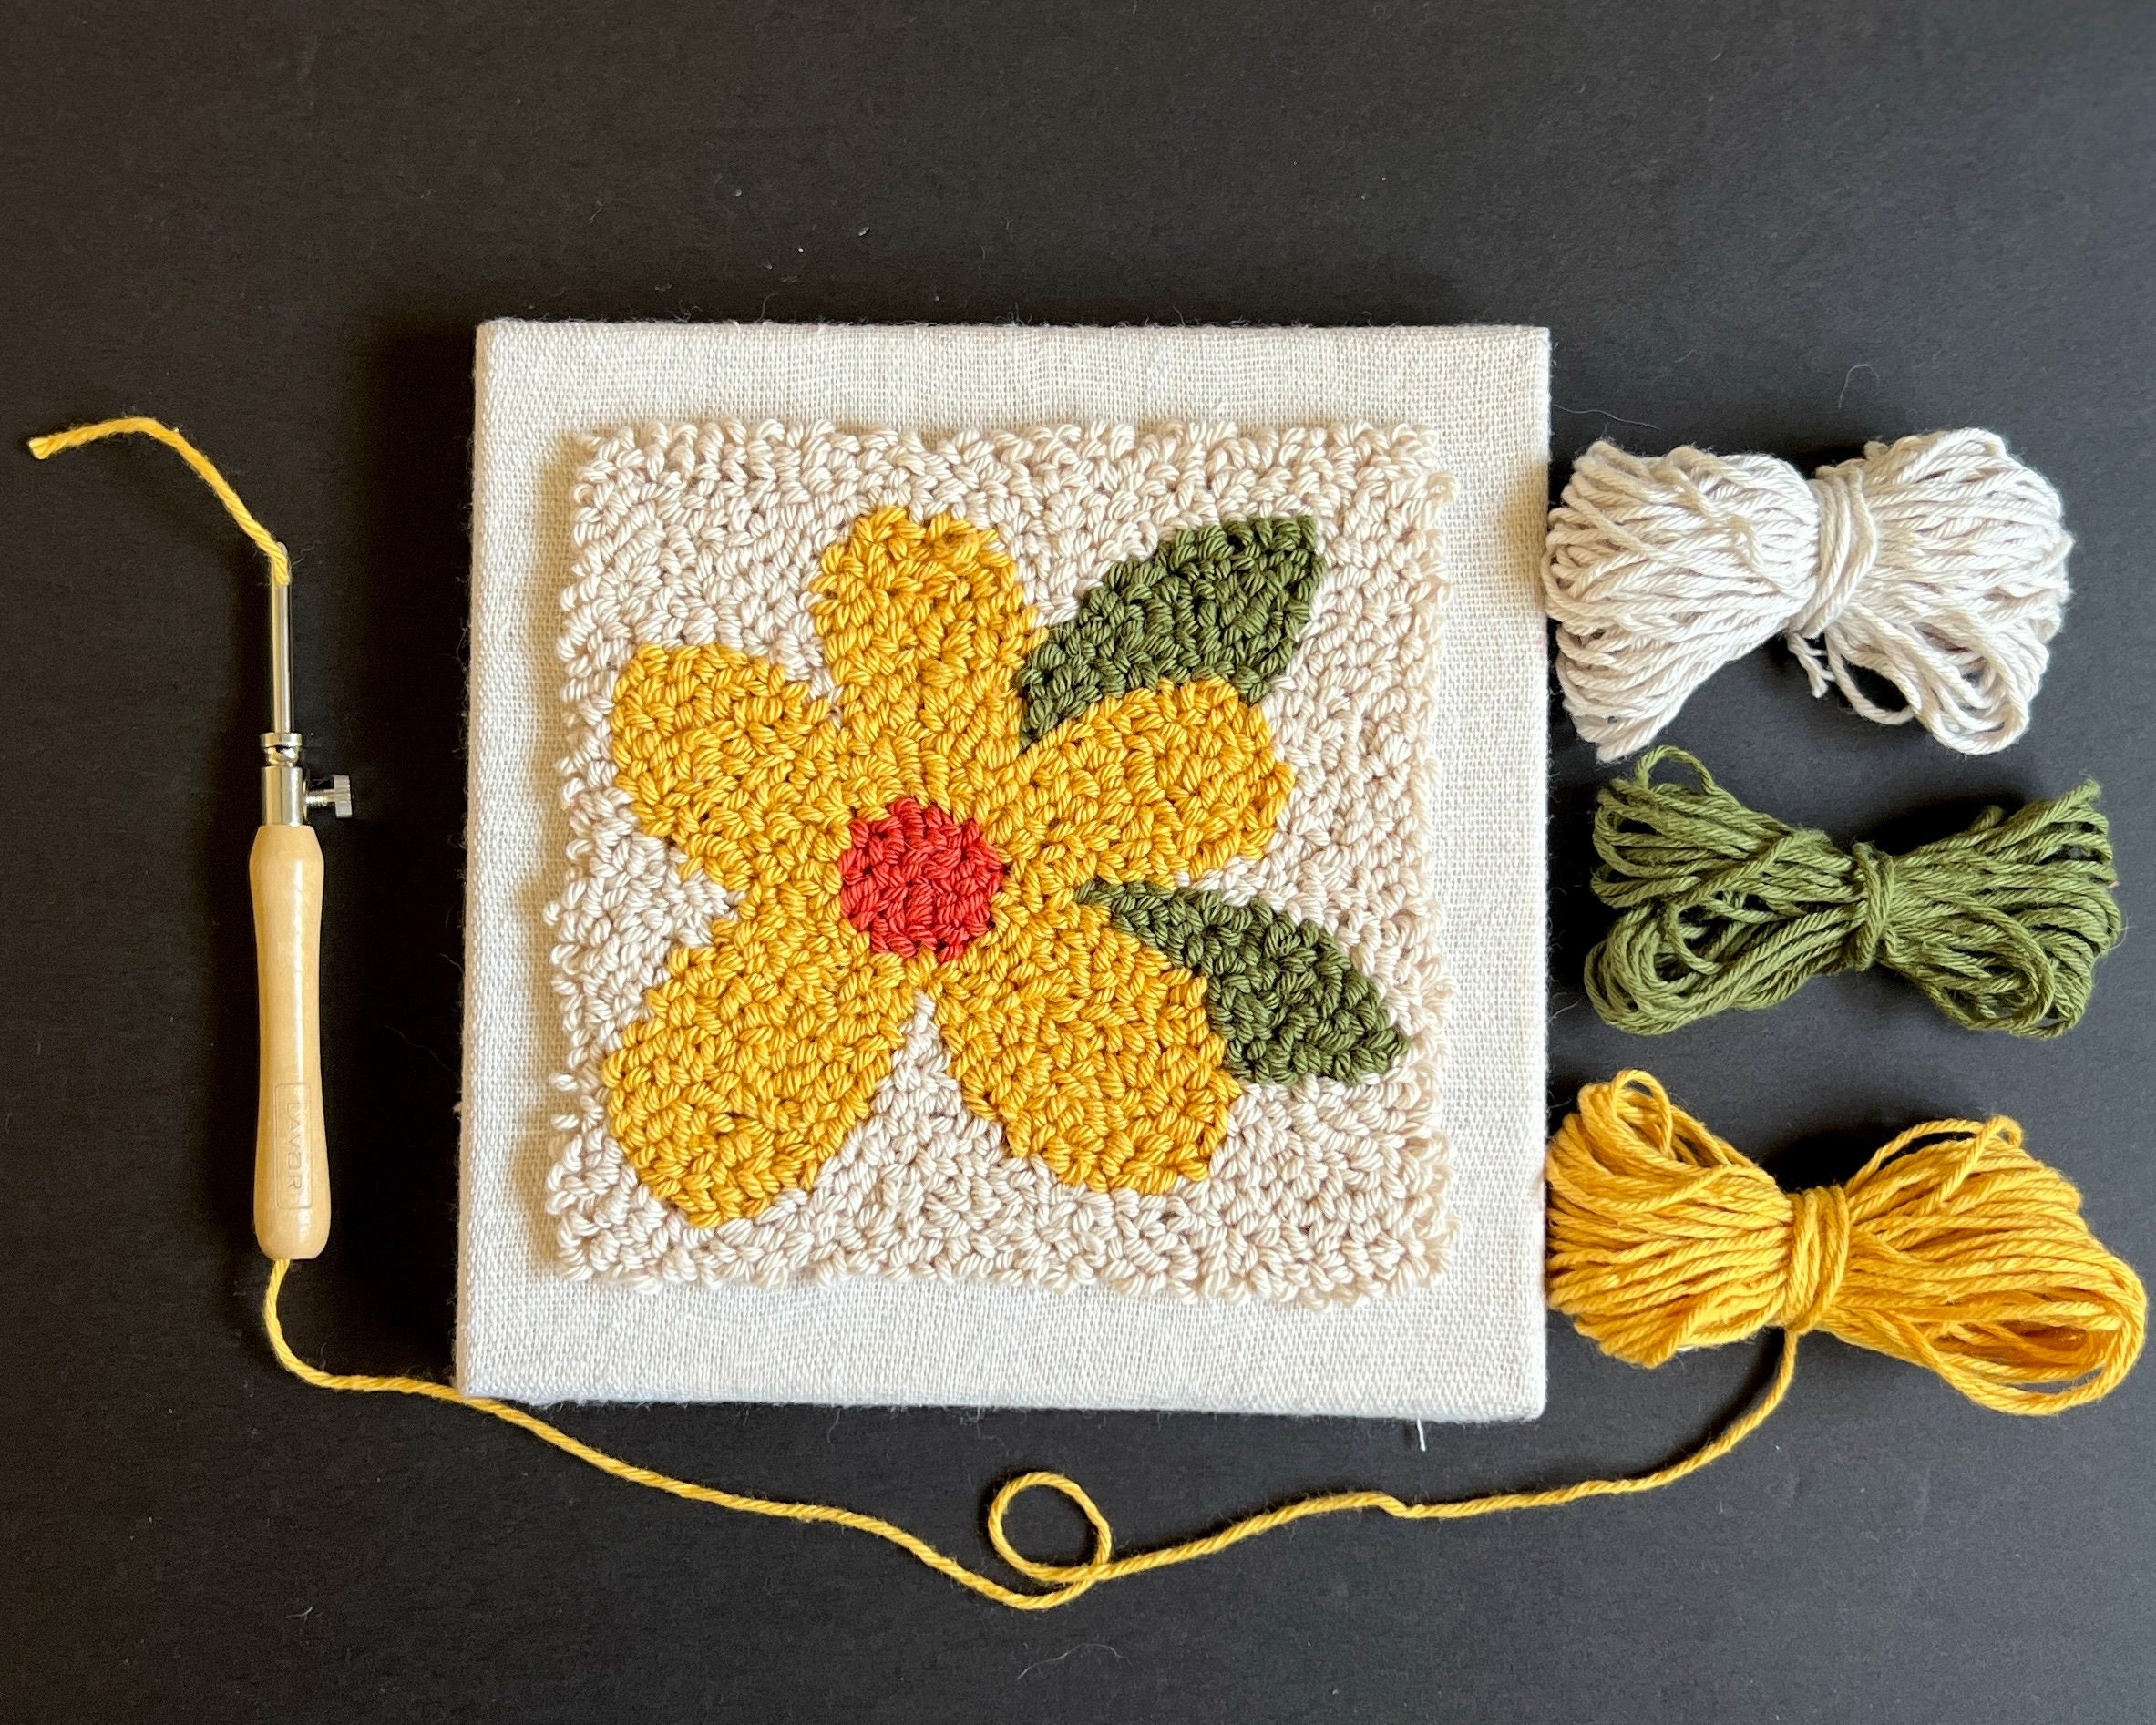 Floral Punch Needle Kit Landscape Rug Yarn Hooking Beginner Kit